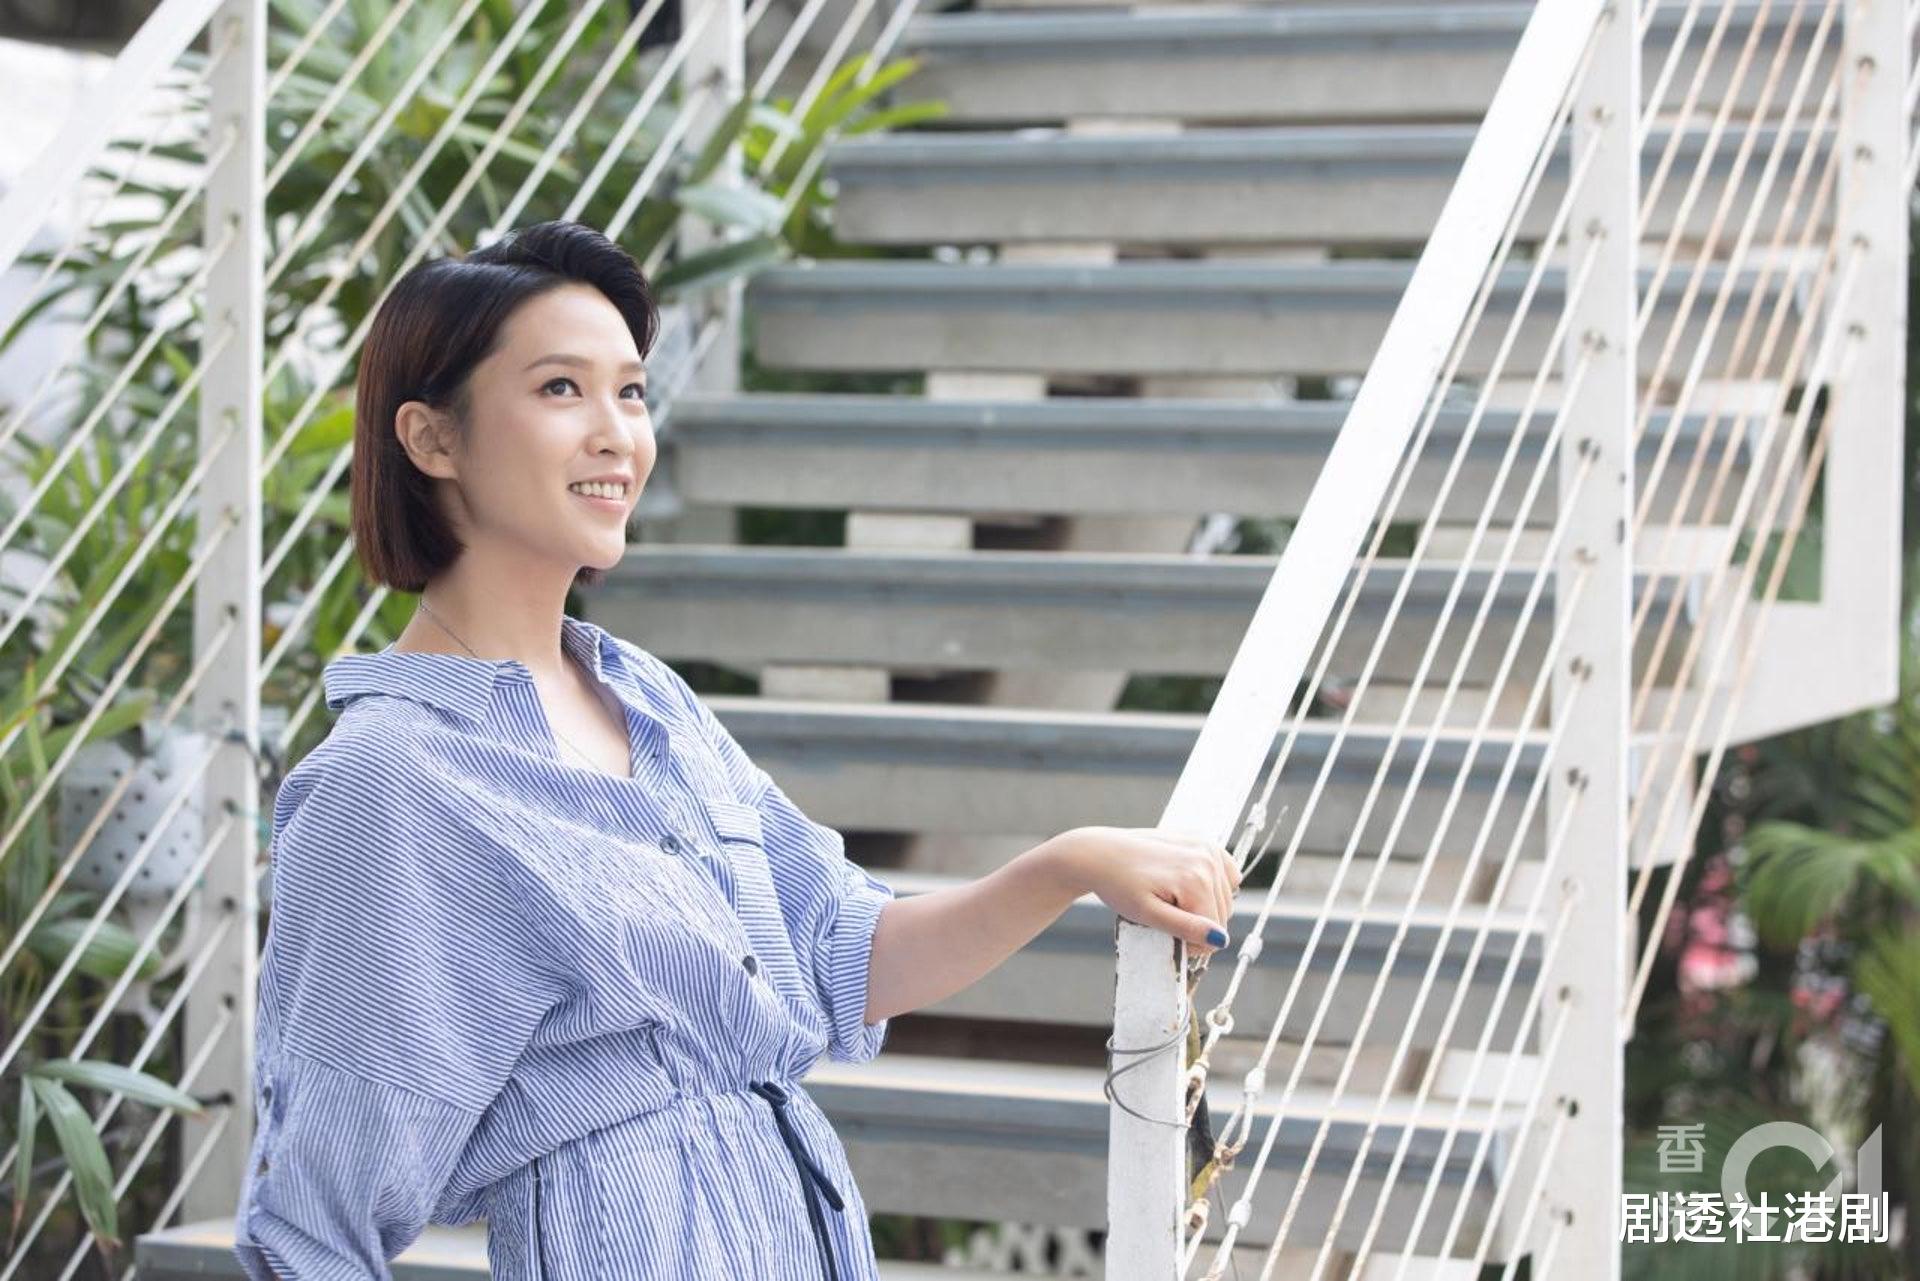 自曝從沒二人世界！36歲女演員愛情至上21歲做繼母，出演TVB新劇被贊有氣質-圖3